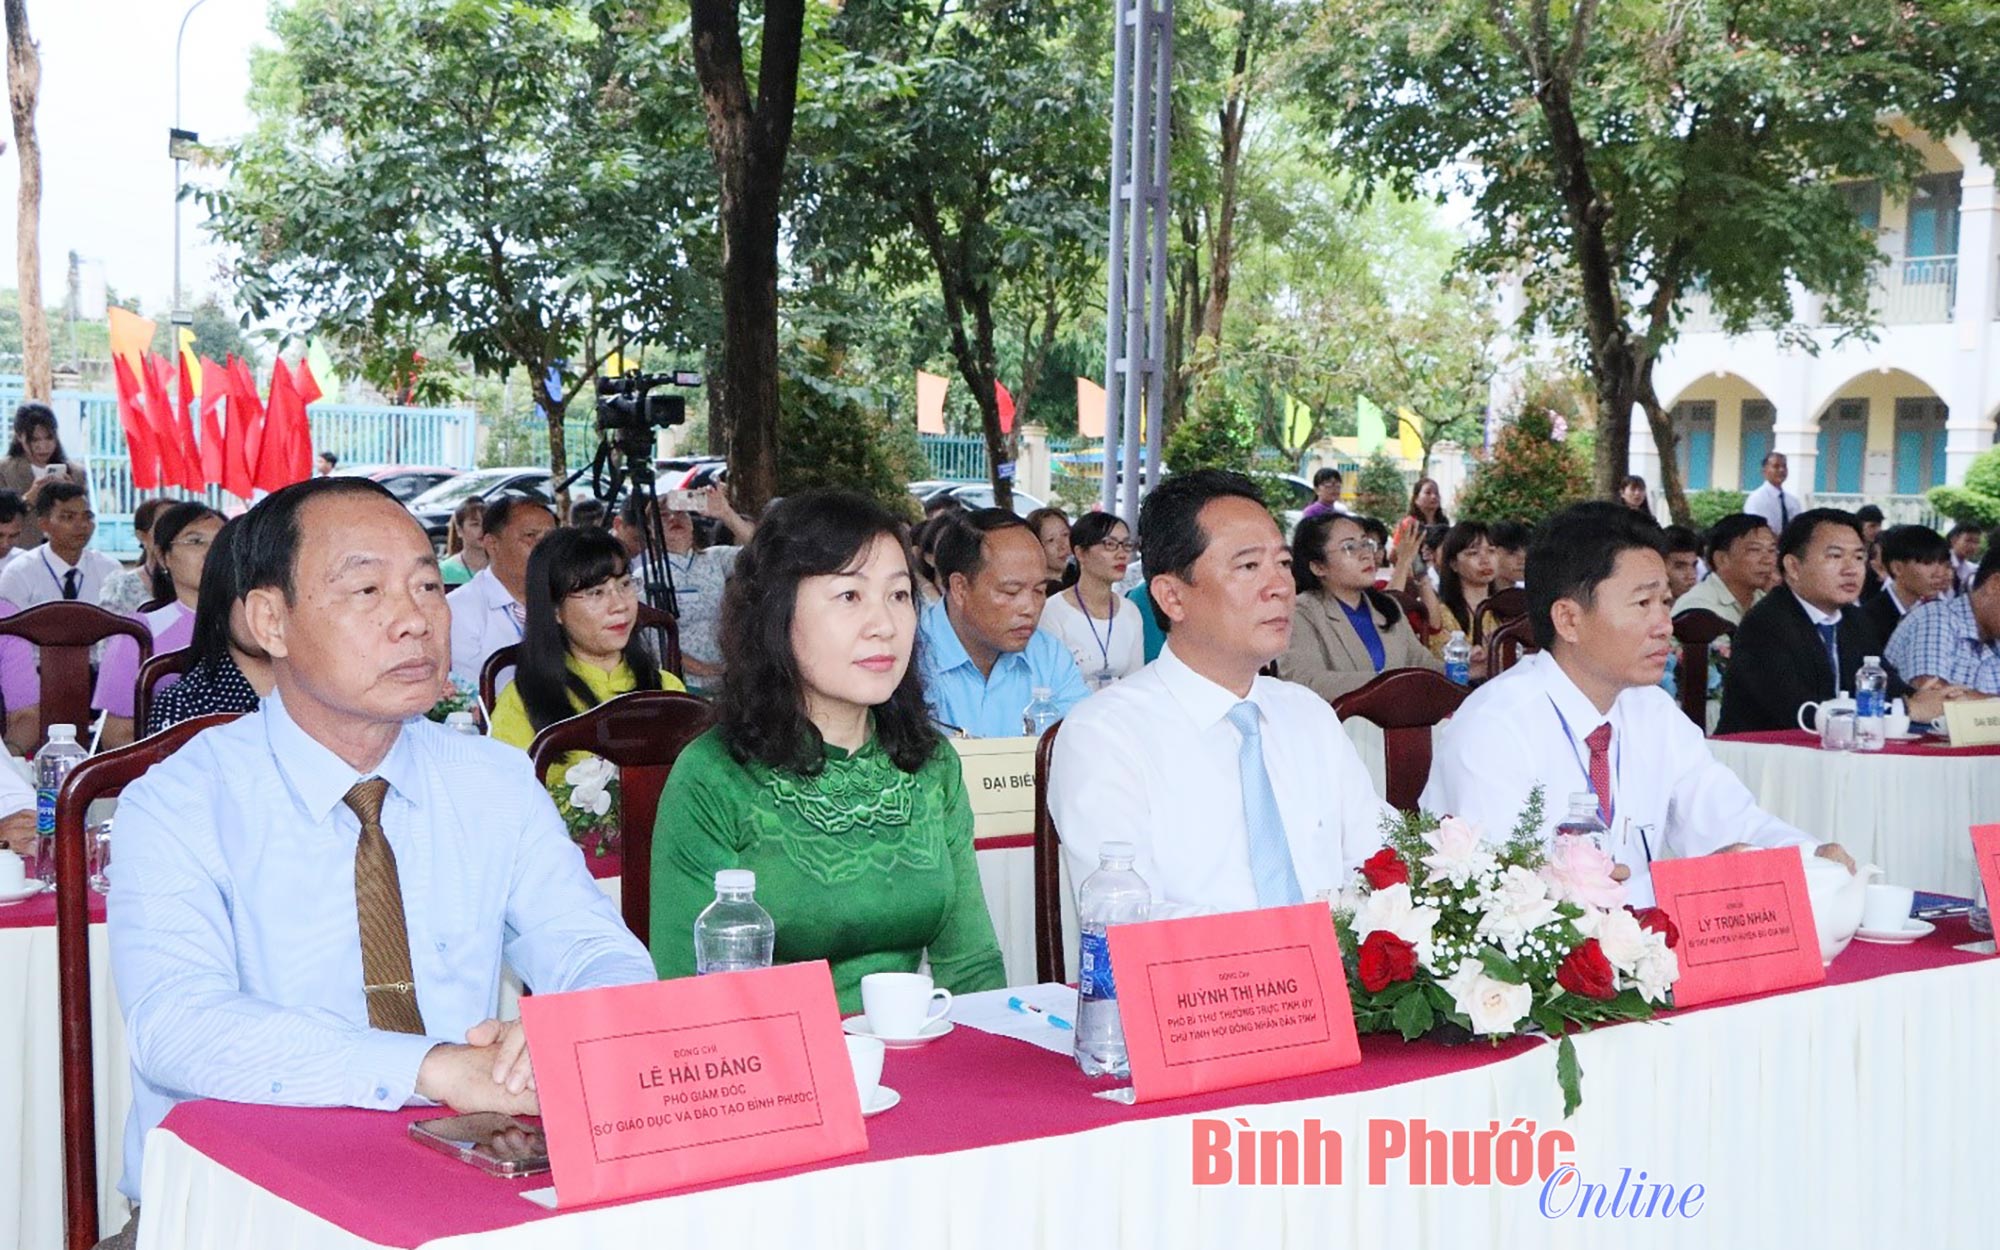 Phó Bí thư Thường trực Tỉnh ủy Huỳnh Thị Hằng: ‘Các em cần siêng năng học tốt để xây dựng đất nước’